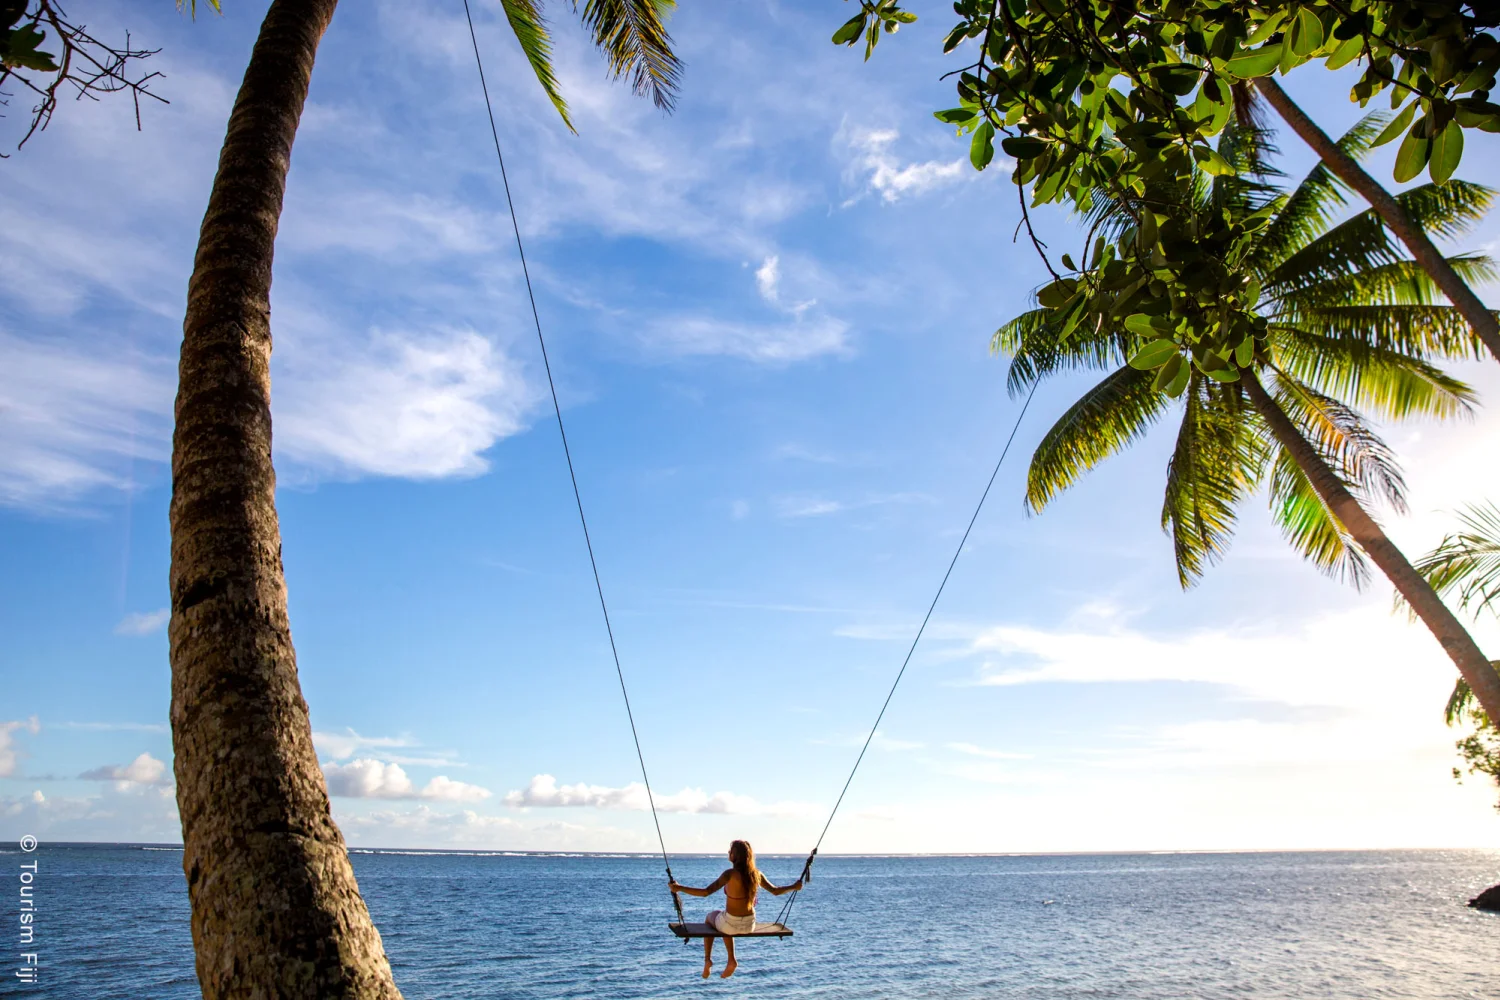 Fiji - Coral Coast - Beach Swing